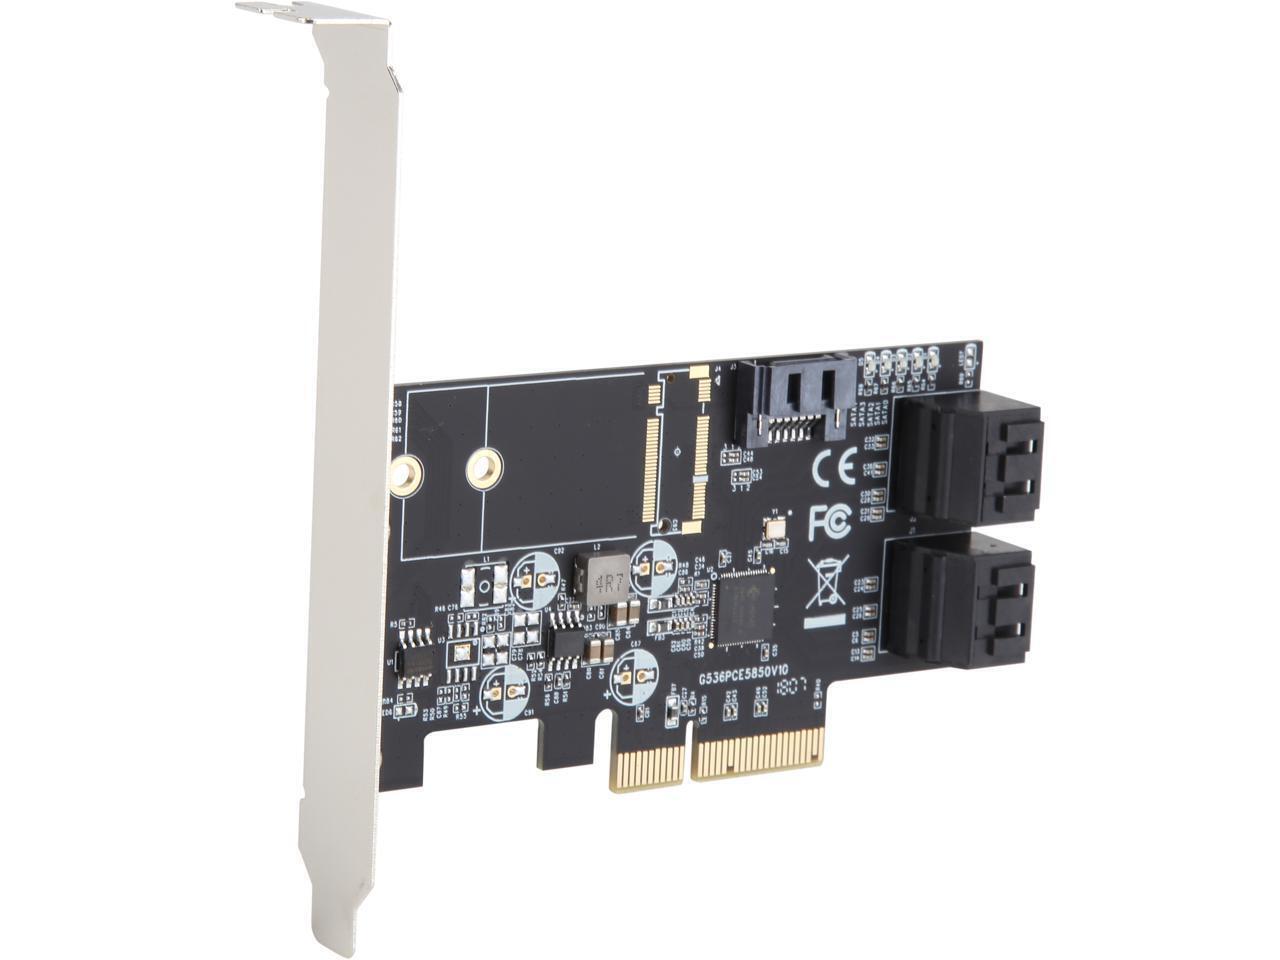 SYBA 5 x Port Non-RAID SATA III 6 Gbp/s PCI-e x4 Controller Card Model